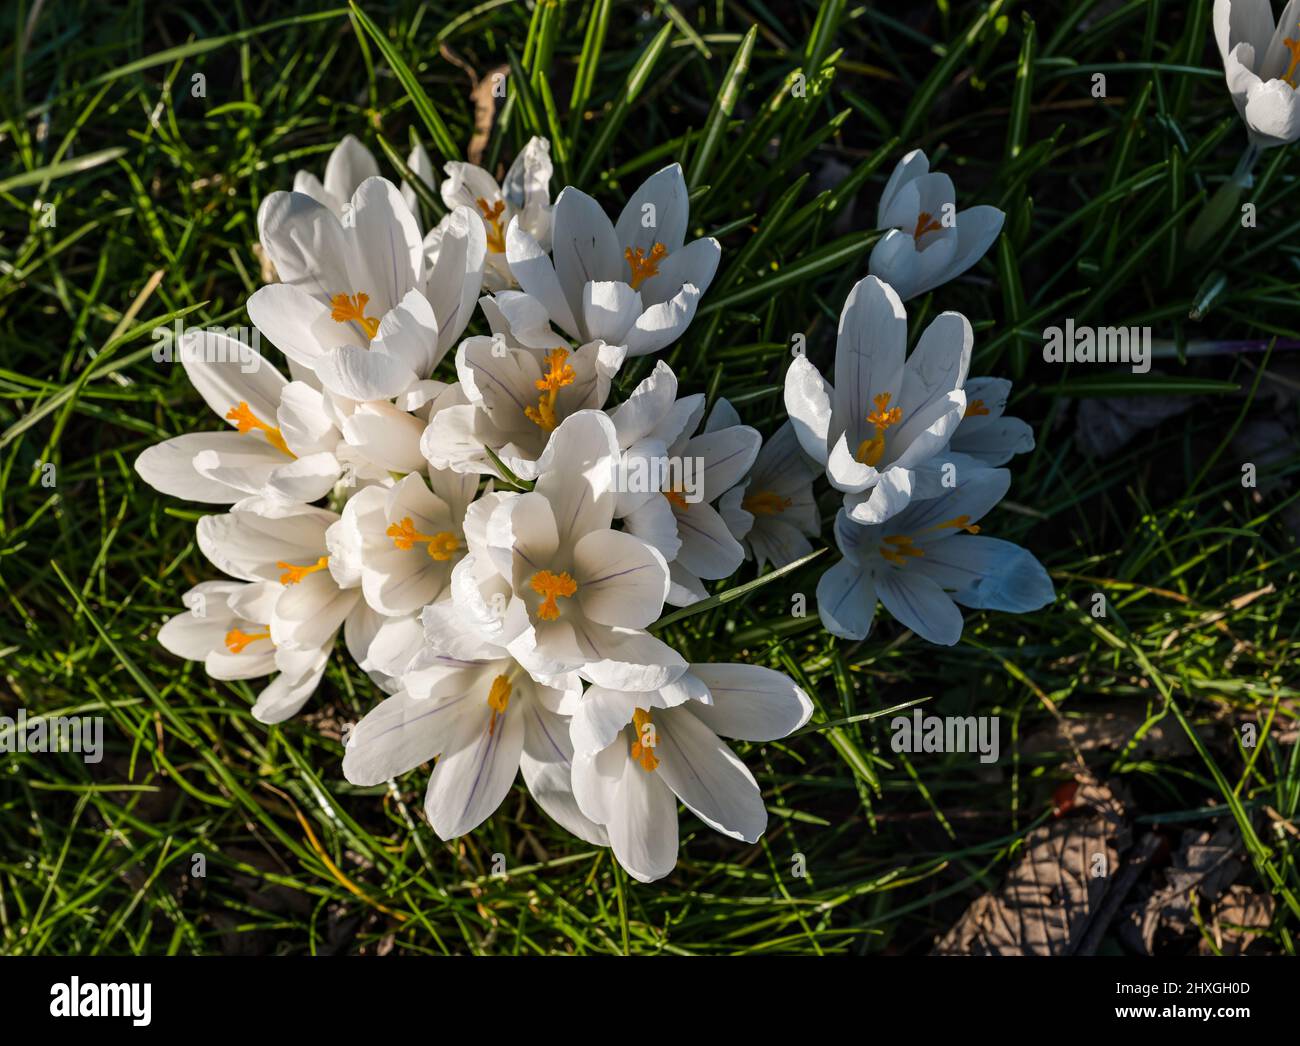 Nahaufnahme von bunten Krokussen in Blüte, die an sonnigen Tagen im Gras wachsen, Schottland, Großbritannien Stockfoto